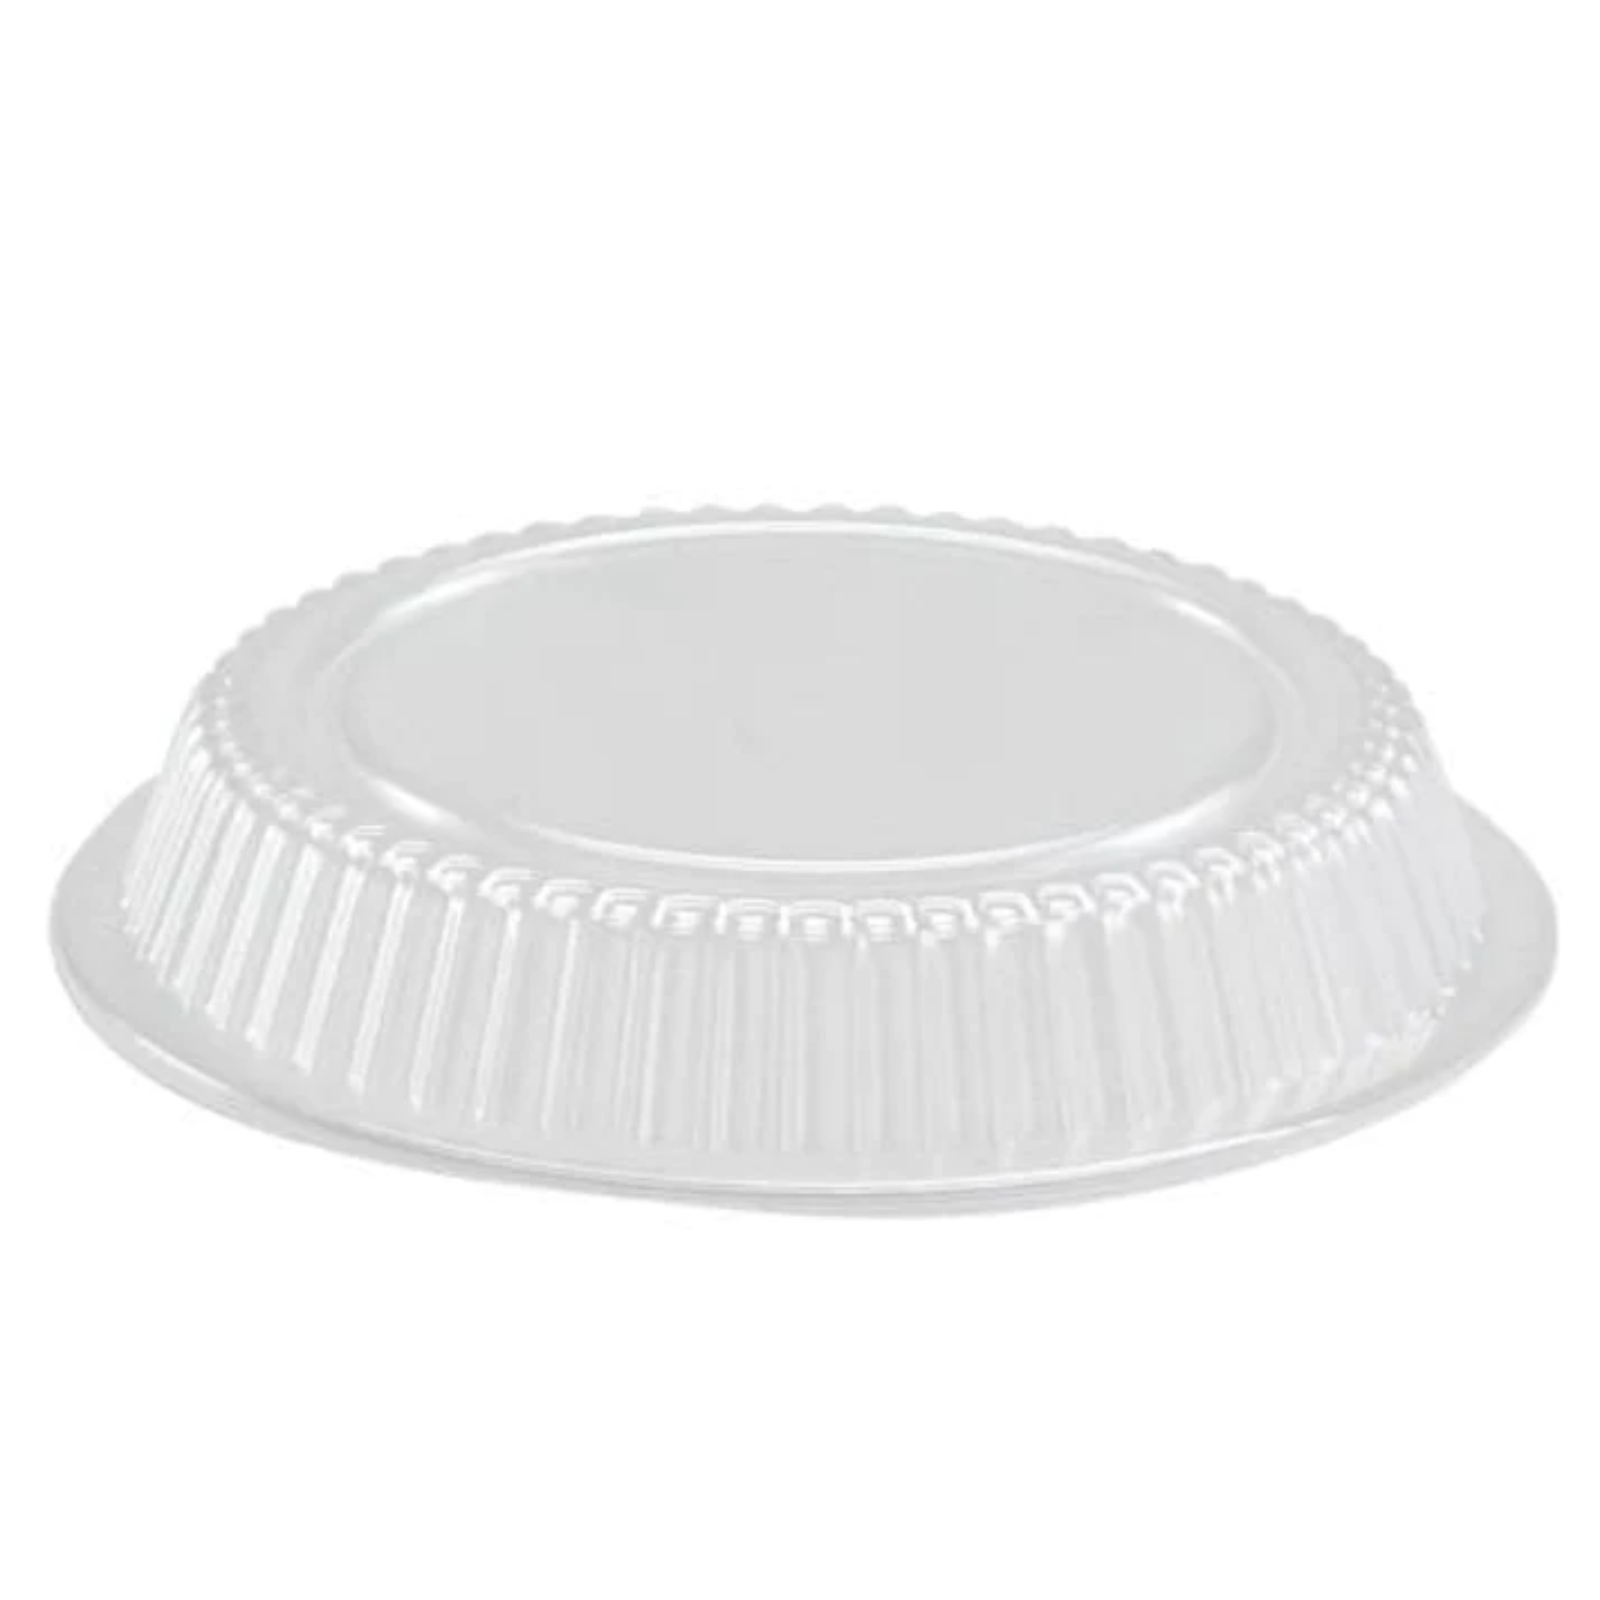 *WHOLESALE* 9" Dome Lids for Disposable Aluminum Round Pan | 500 ct/case Disposable JetFoil   